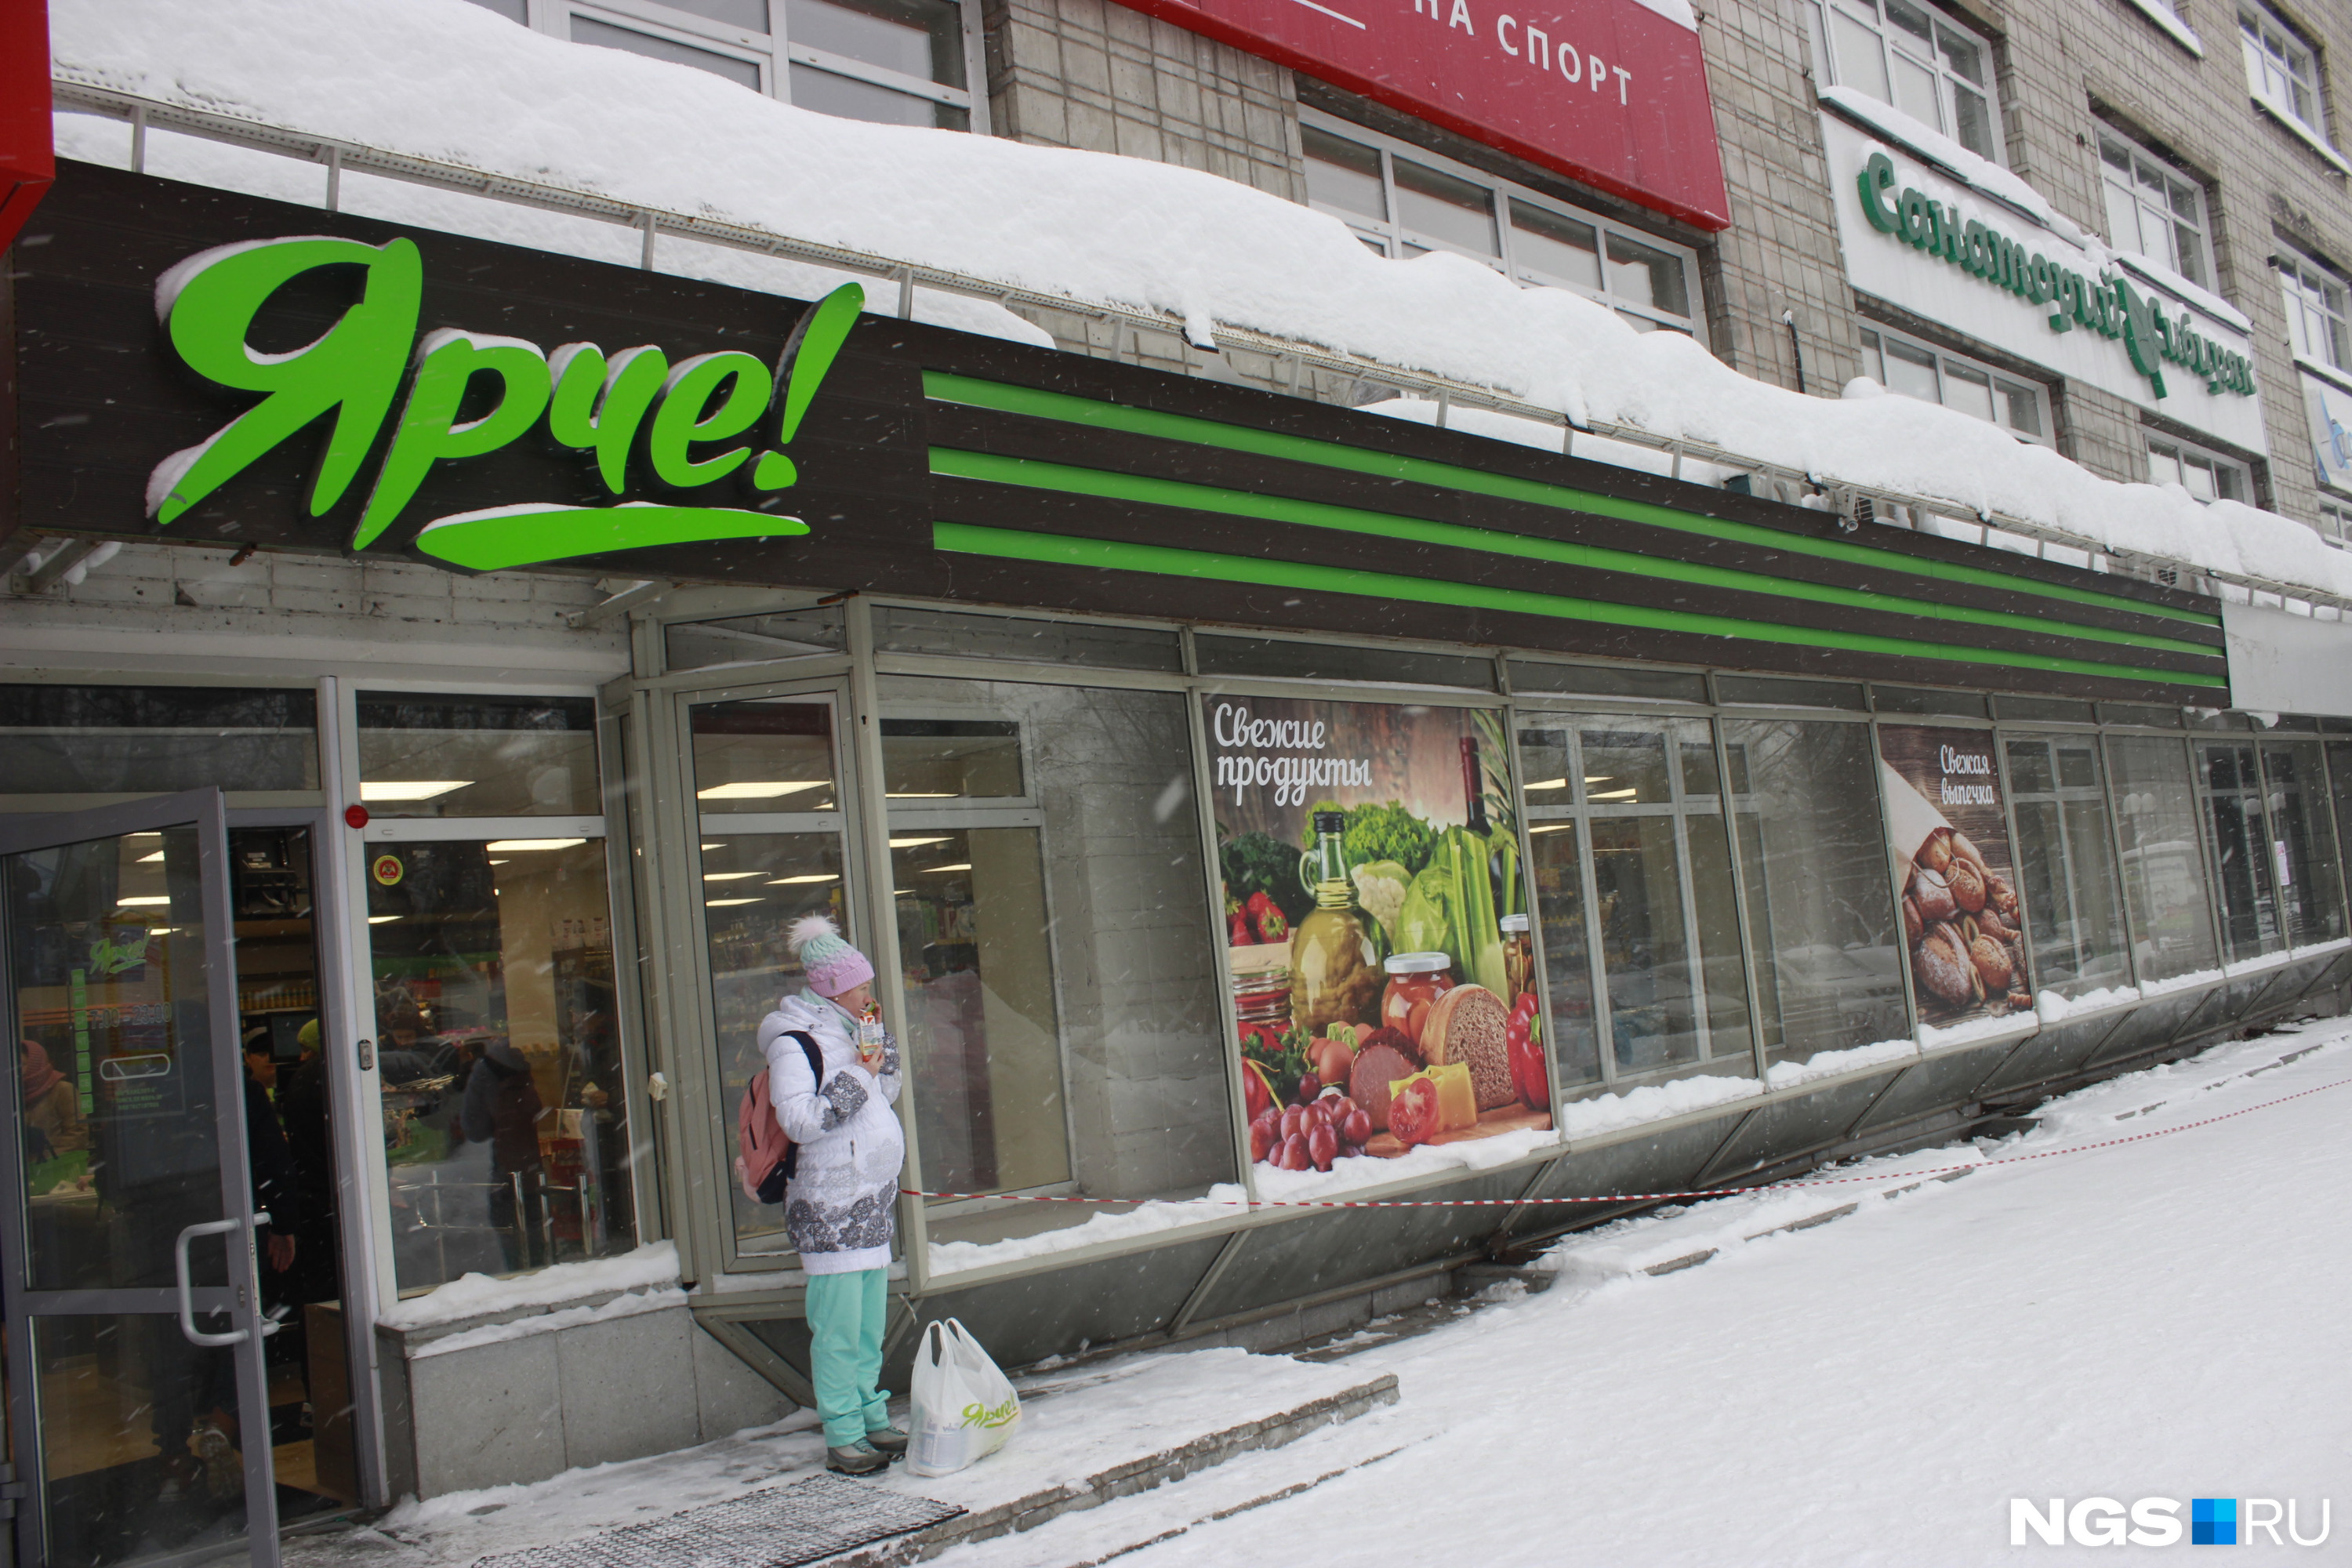 Местный магазин. Местный магазин сеть. Новосибирск местный магазин. Сеть магазинов ярче кому принадлежит в России.